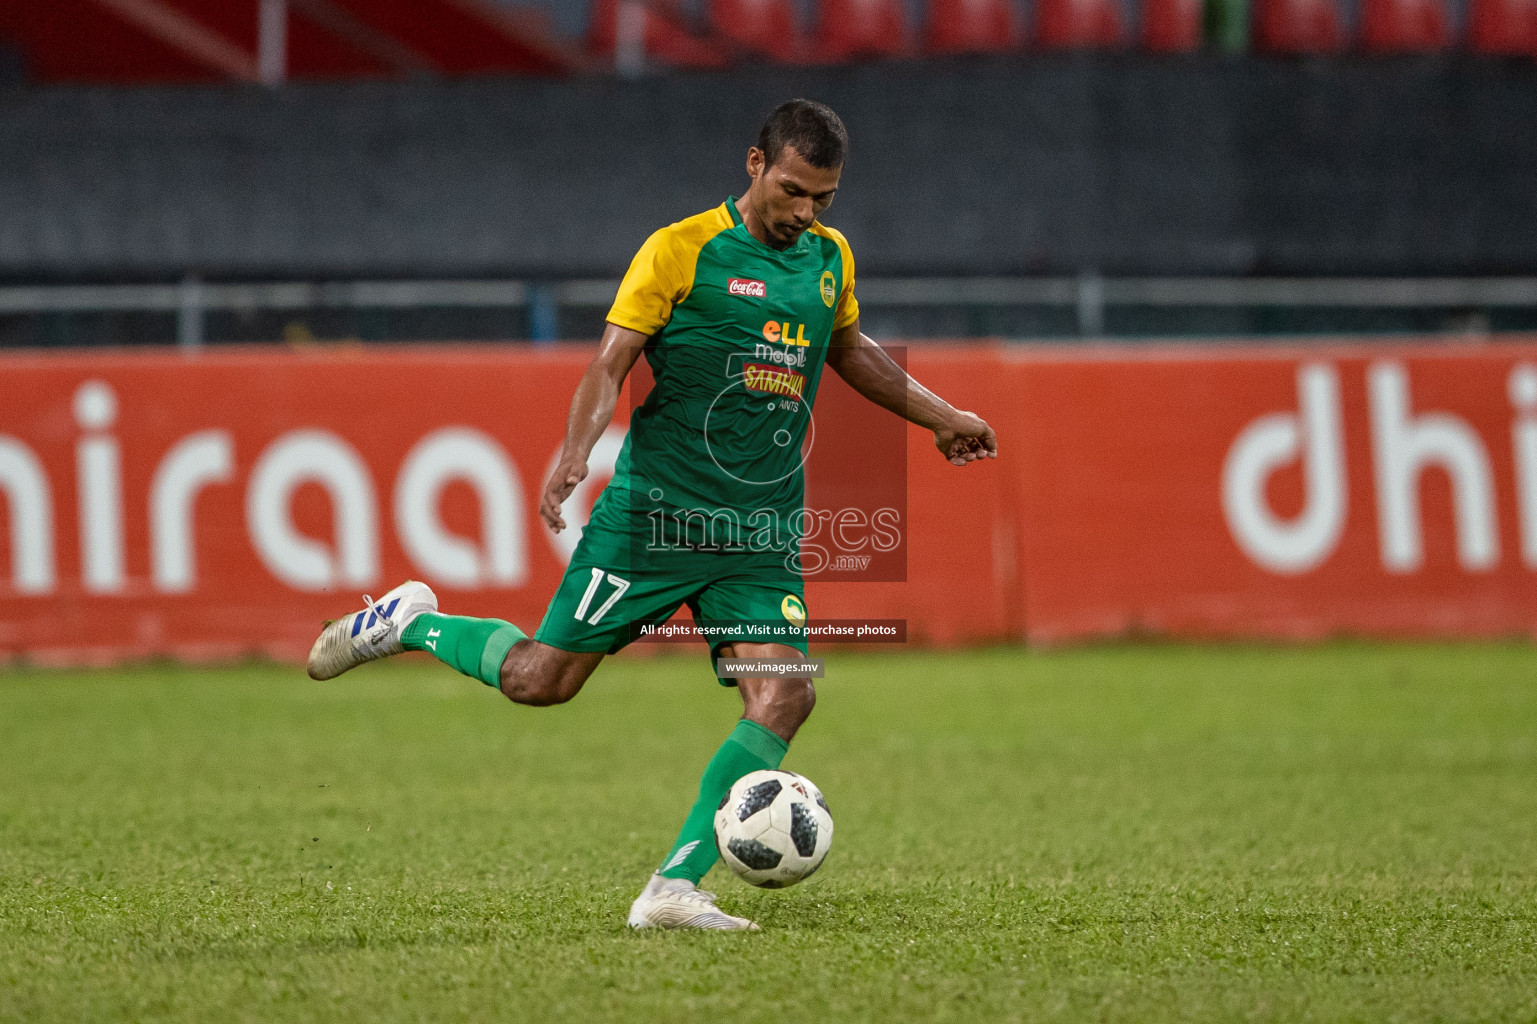 Maziya SRC vs Club Eagles in Dhiraagu Dhivehi Premier League 2019, in Male' Maldives on 16th Oct 2019. Photos:Suadh Abdul Sattar / images.mv